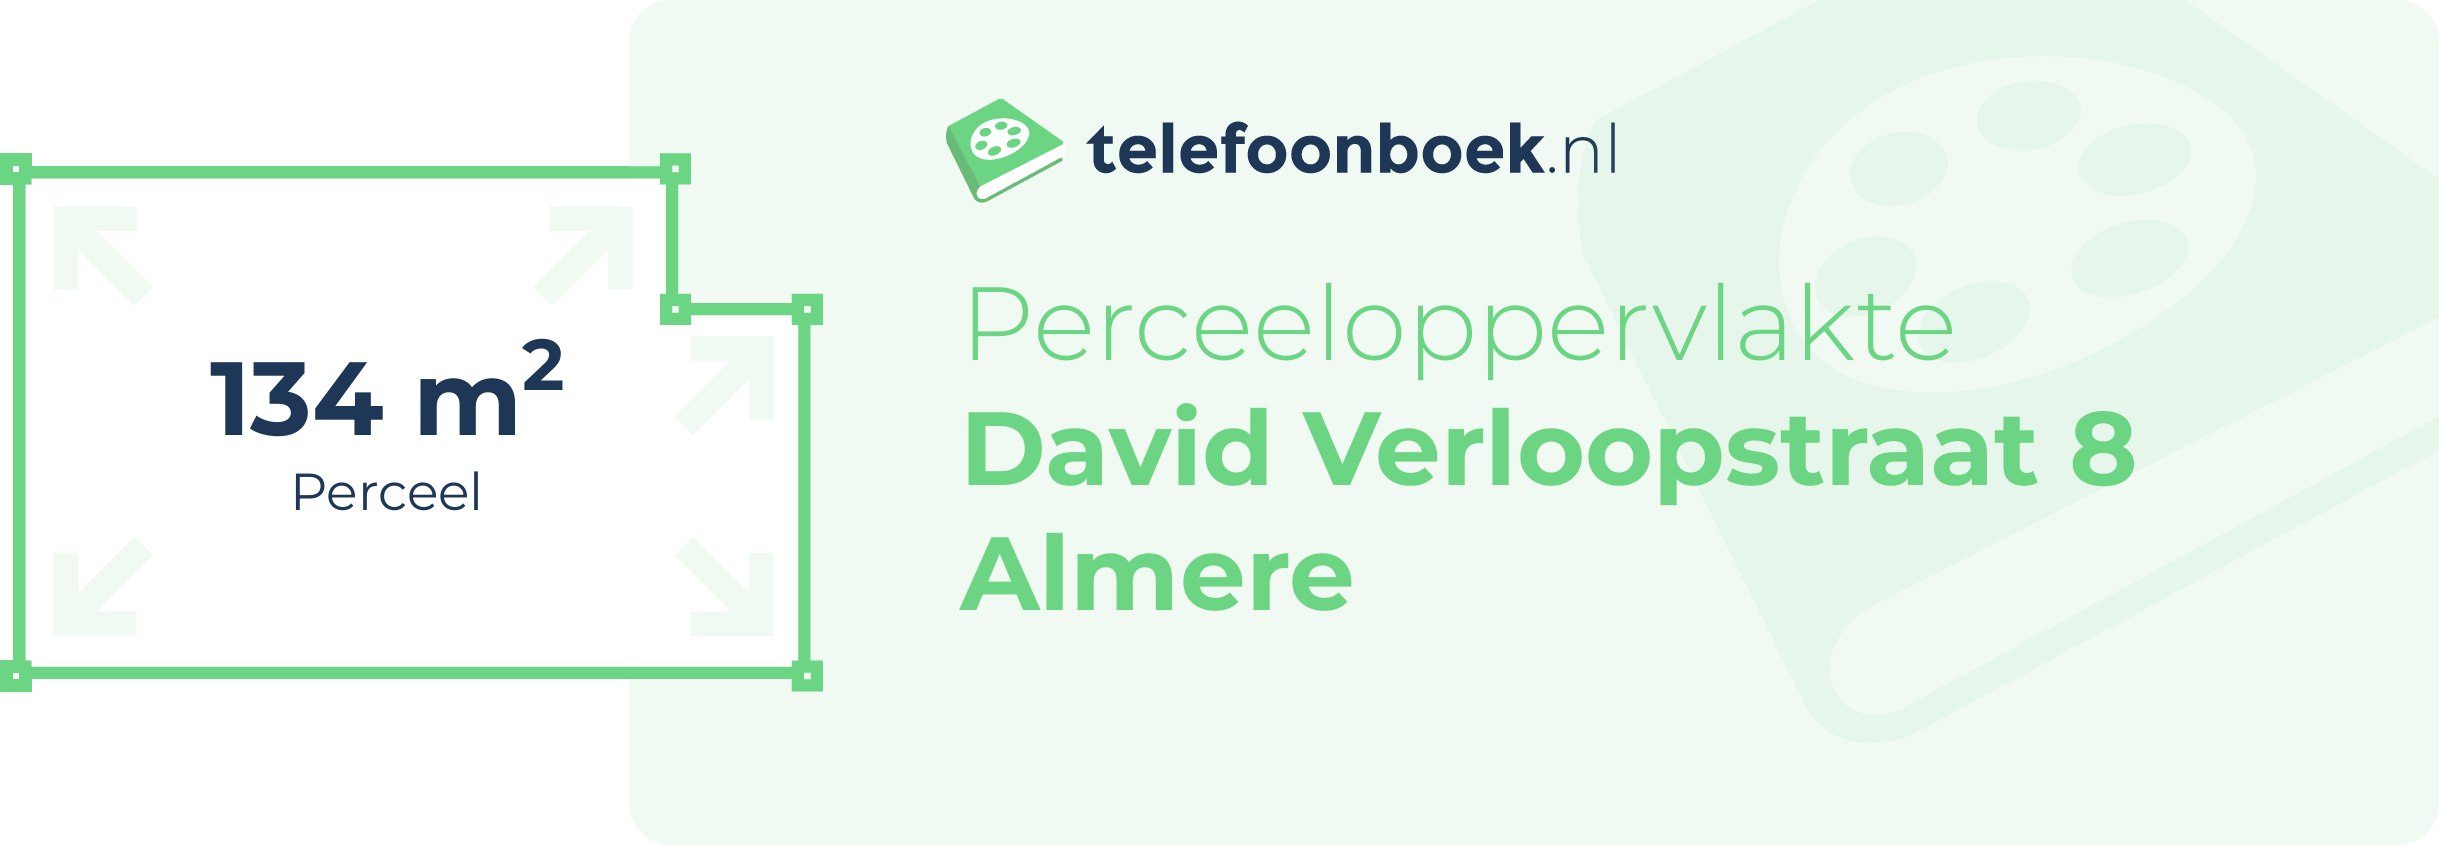 Perceeloppervlakte David Verloopstraat 8 Almere